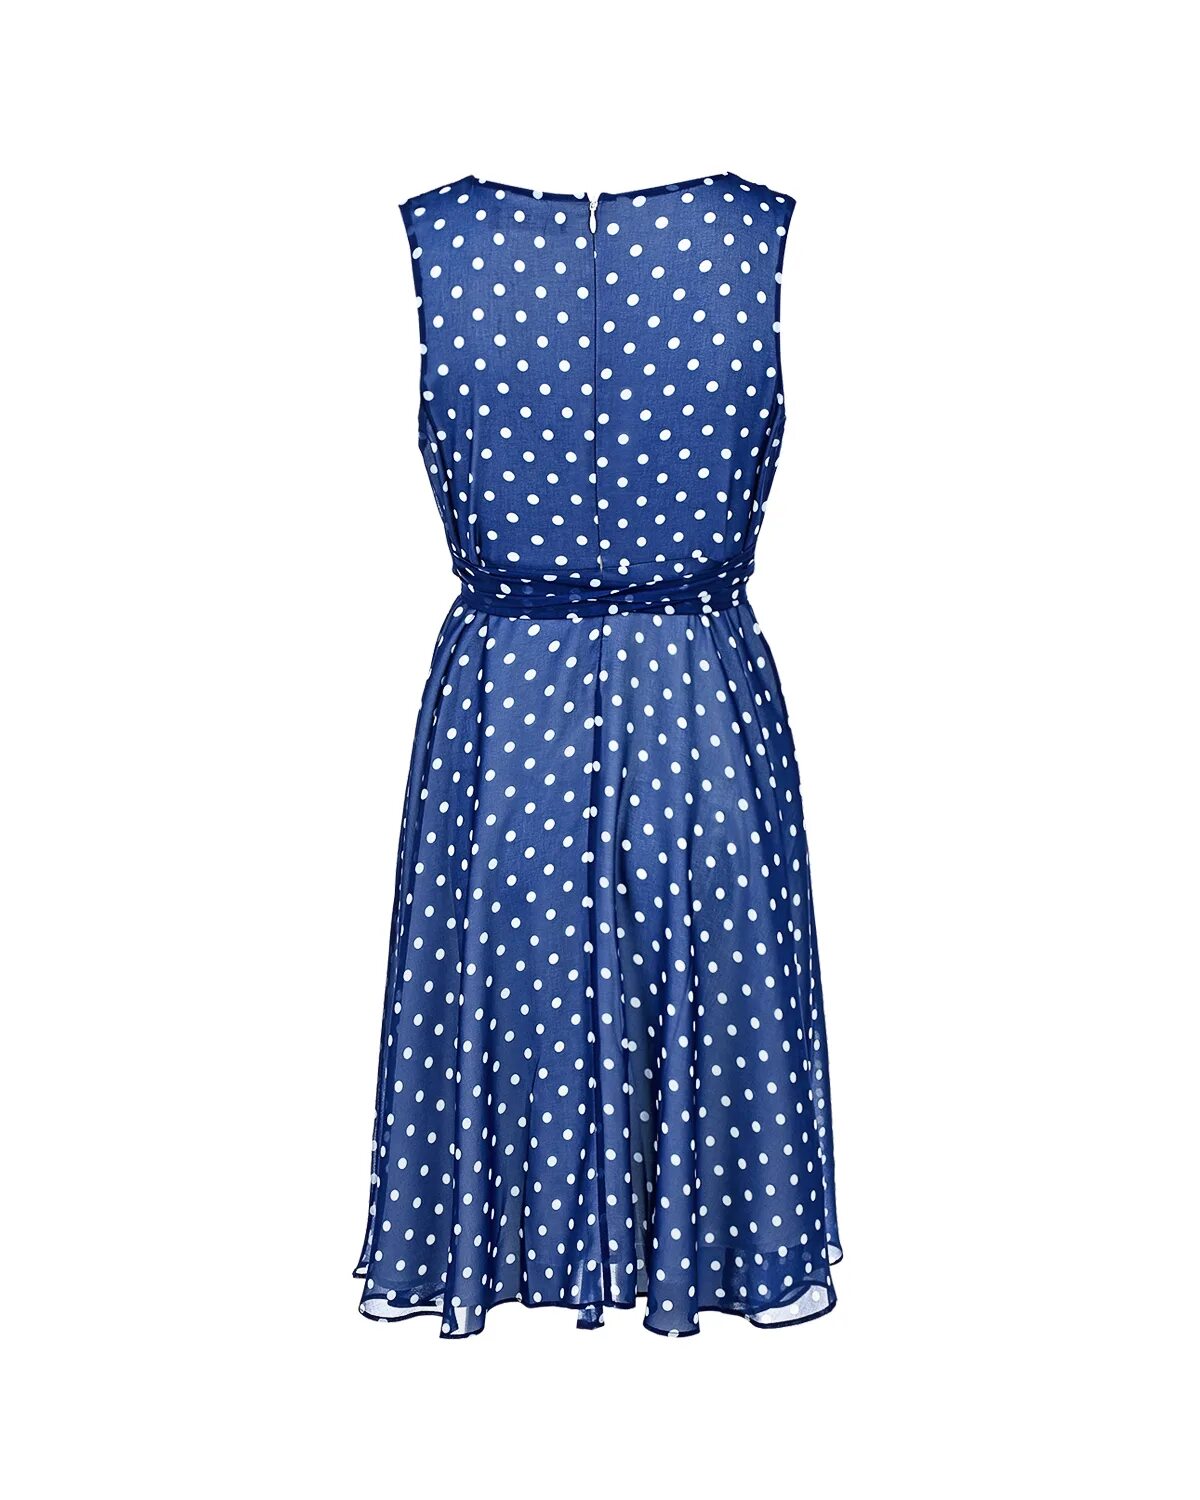 Pietro Brunelli одежда для беременных платье горошек. Платье Dali 5348 синий горошек. Синее платье в белый горох. Голубое платье в горошек. Синий горох платья